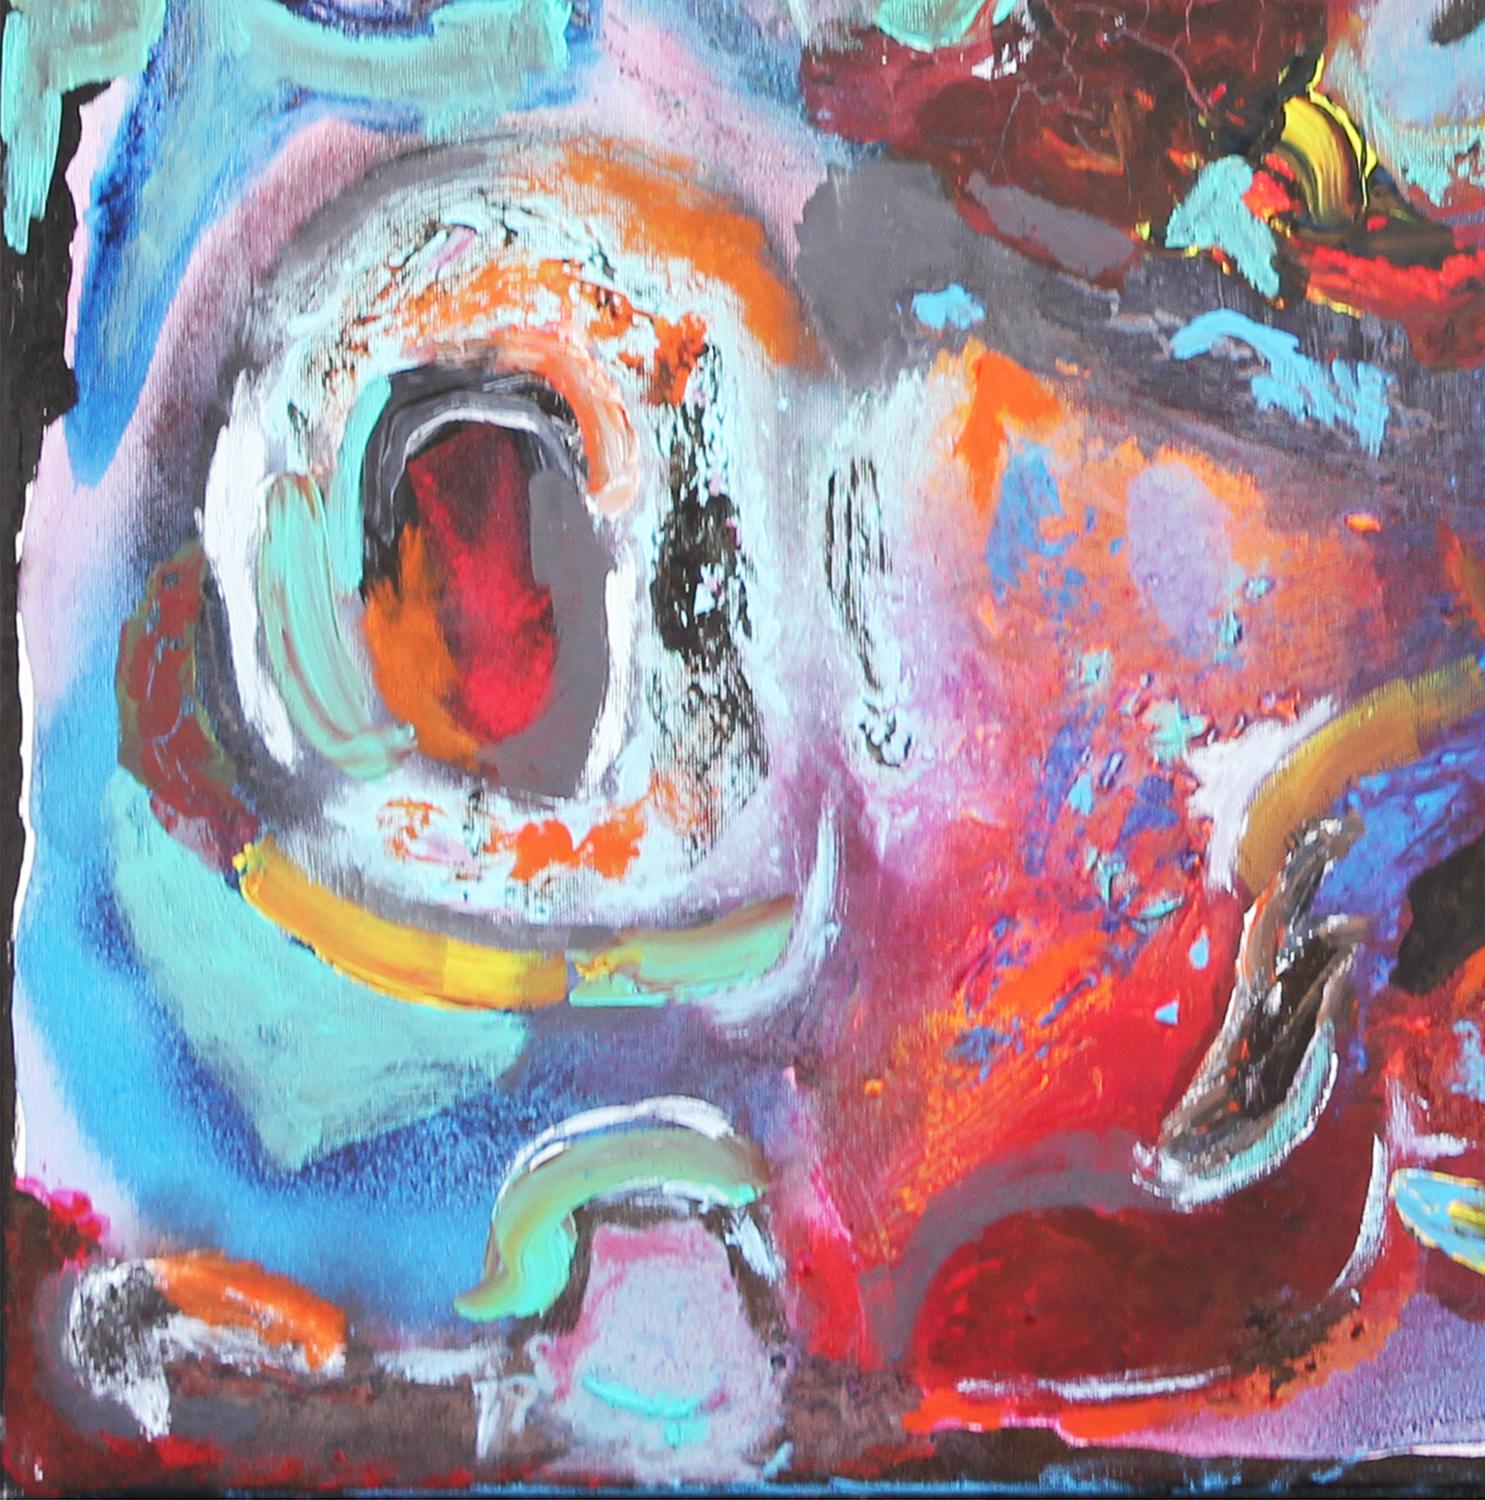 Hellblaues, rosafarbenes, rotes und violettes abstraktes Gemälde des Inhabers von Reeves Art + Design und Künstlers Paul Reeves aus Houston, TX. Dieses Gemälde zeigt bunte abstrakte Pinselstriche, die geschwungene Linien und Wirbel bilden. Signiert,